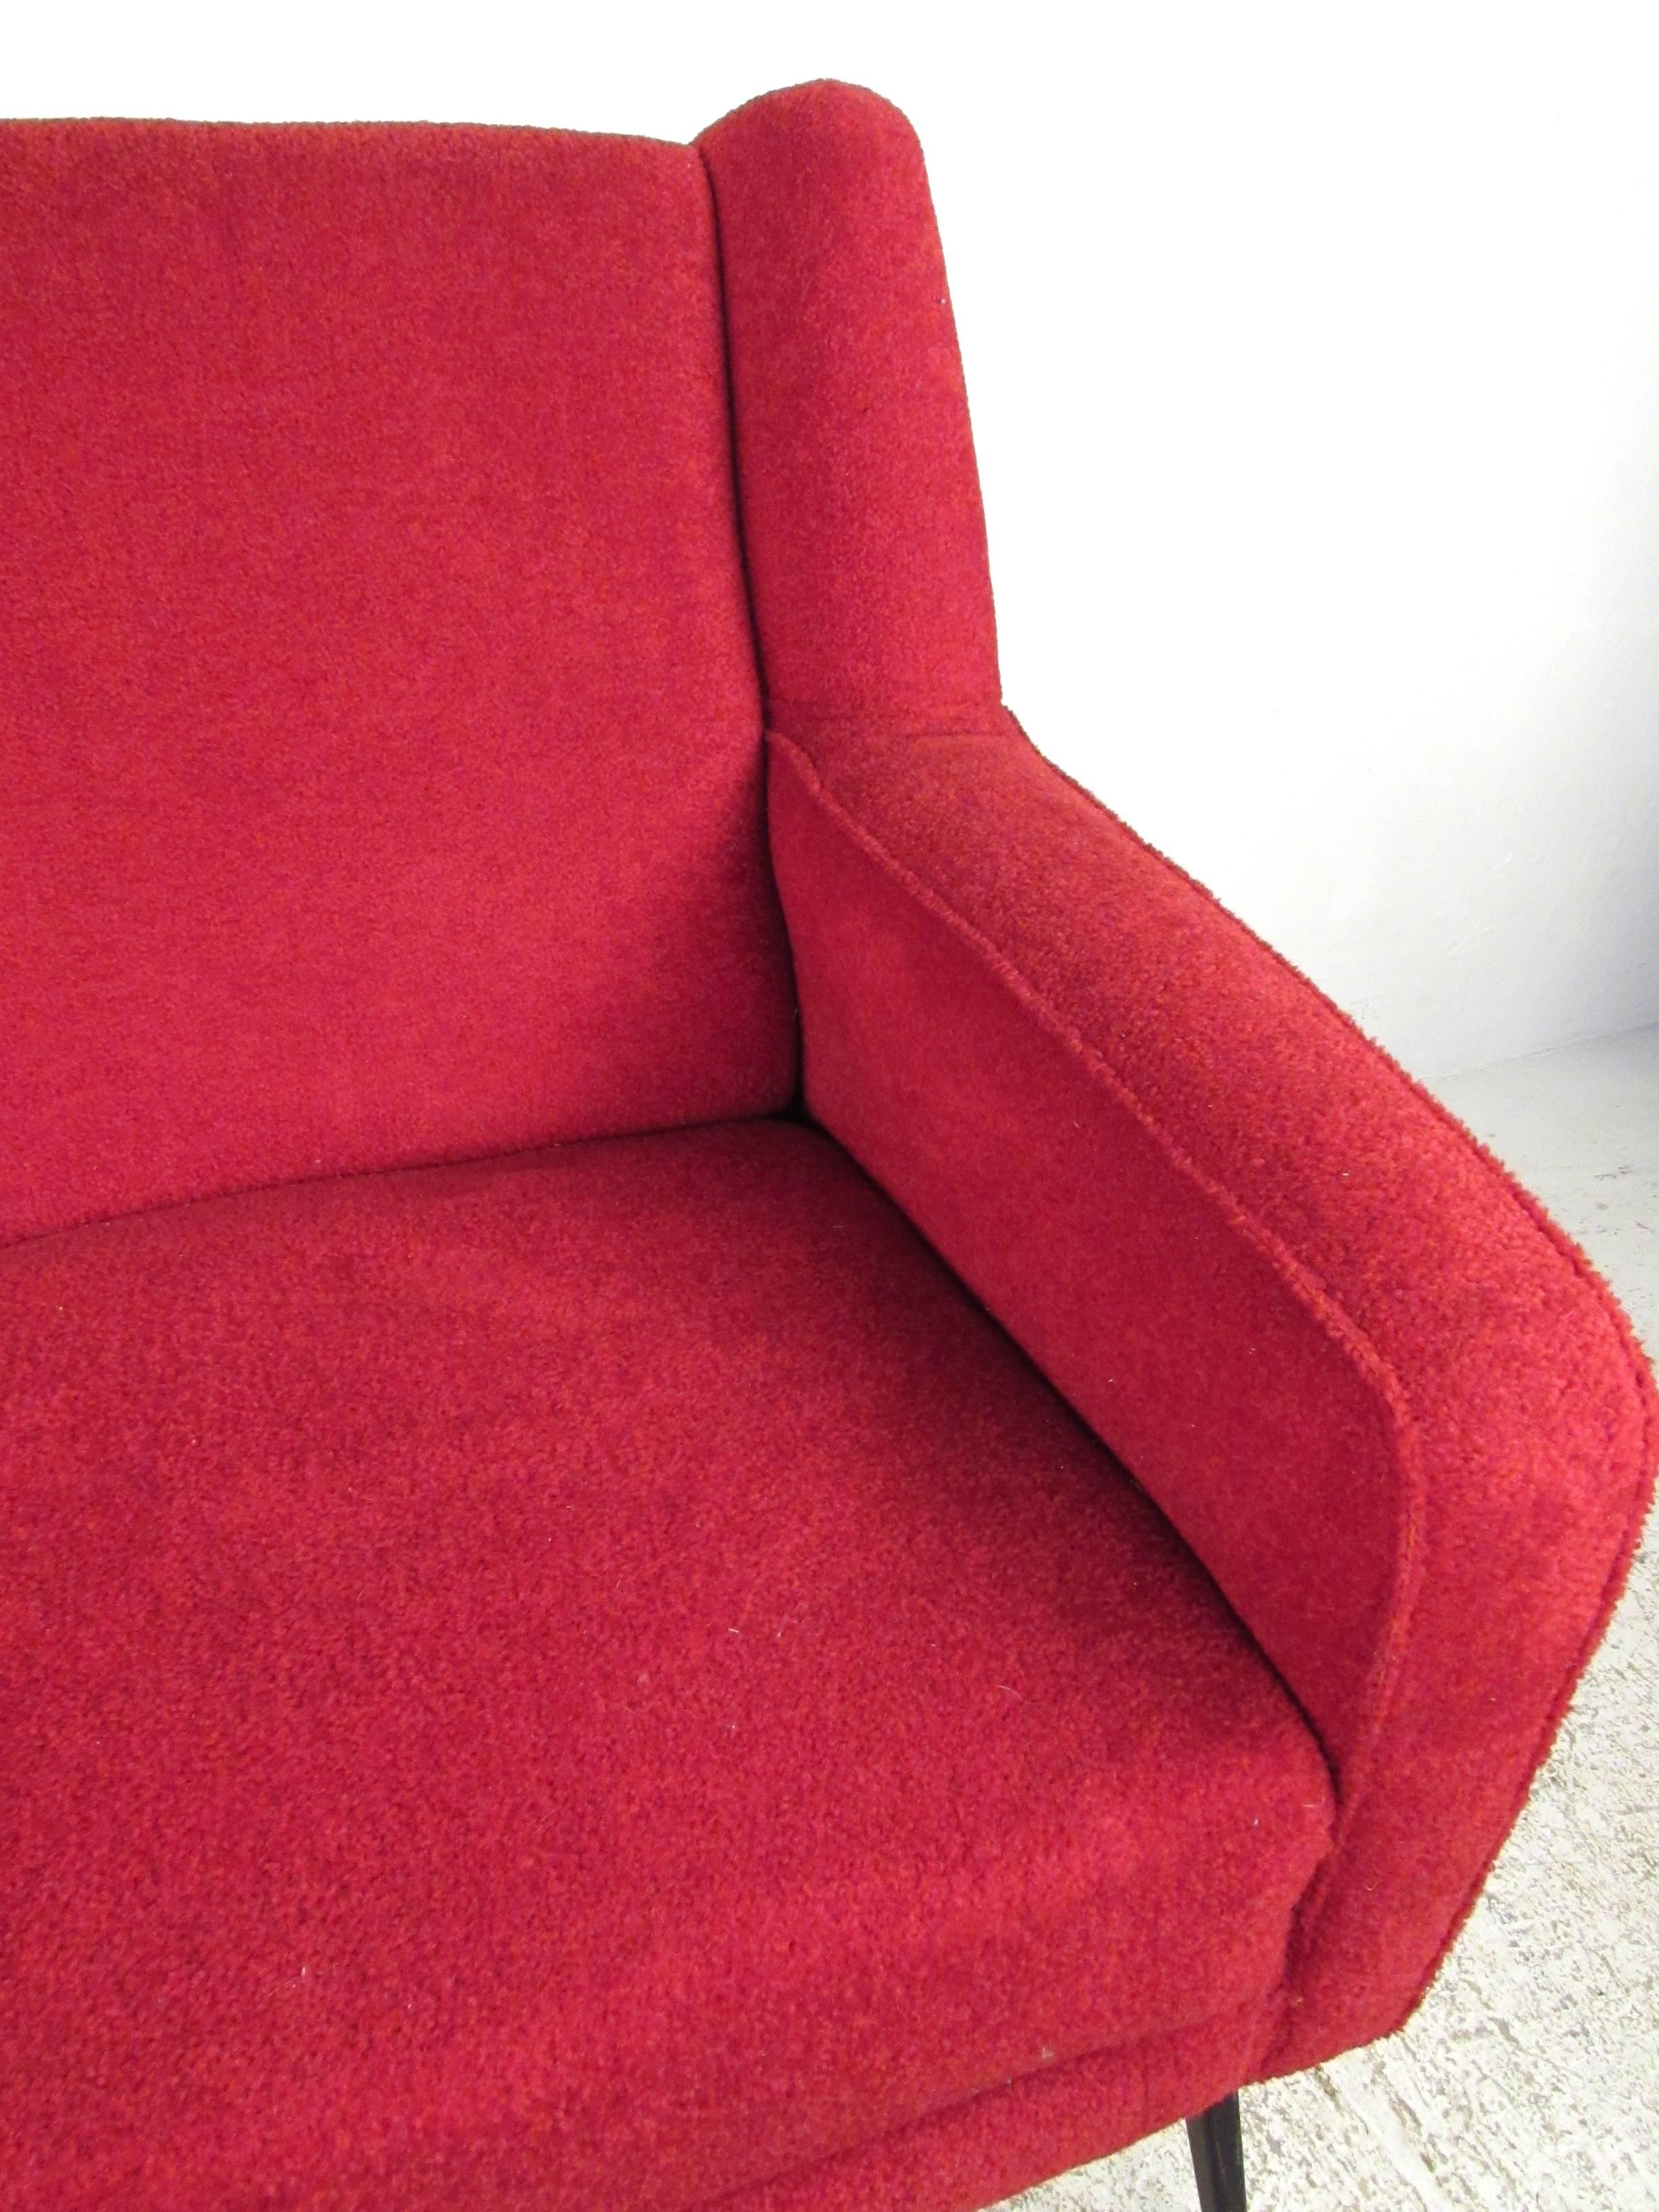 Upholstery Mid-Century Modern Marco Zanuso Style Italian Sofa